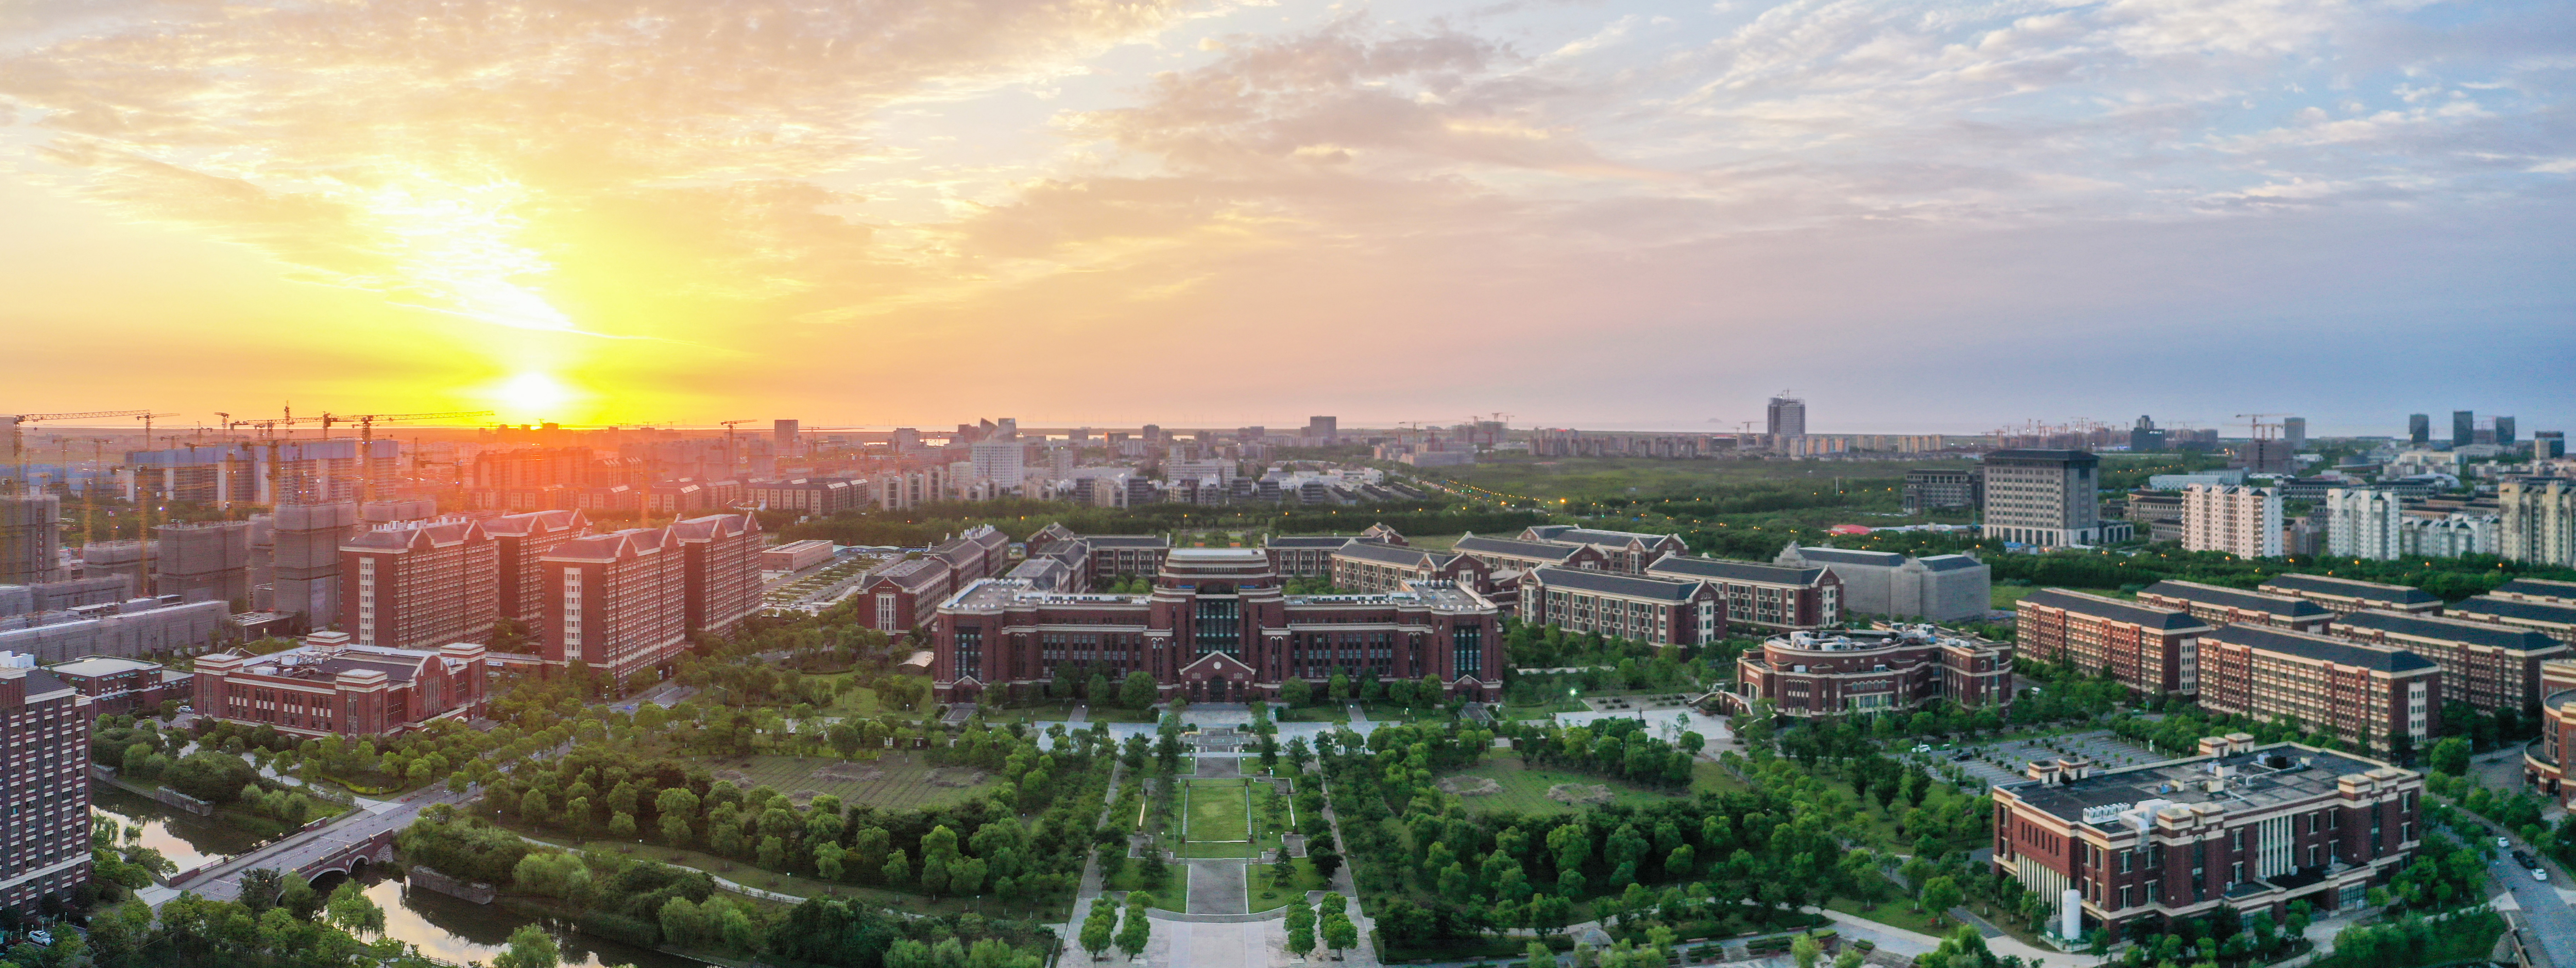 上海建桥学院校园风光图片